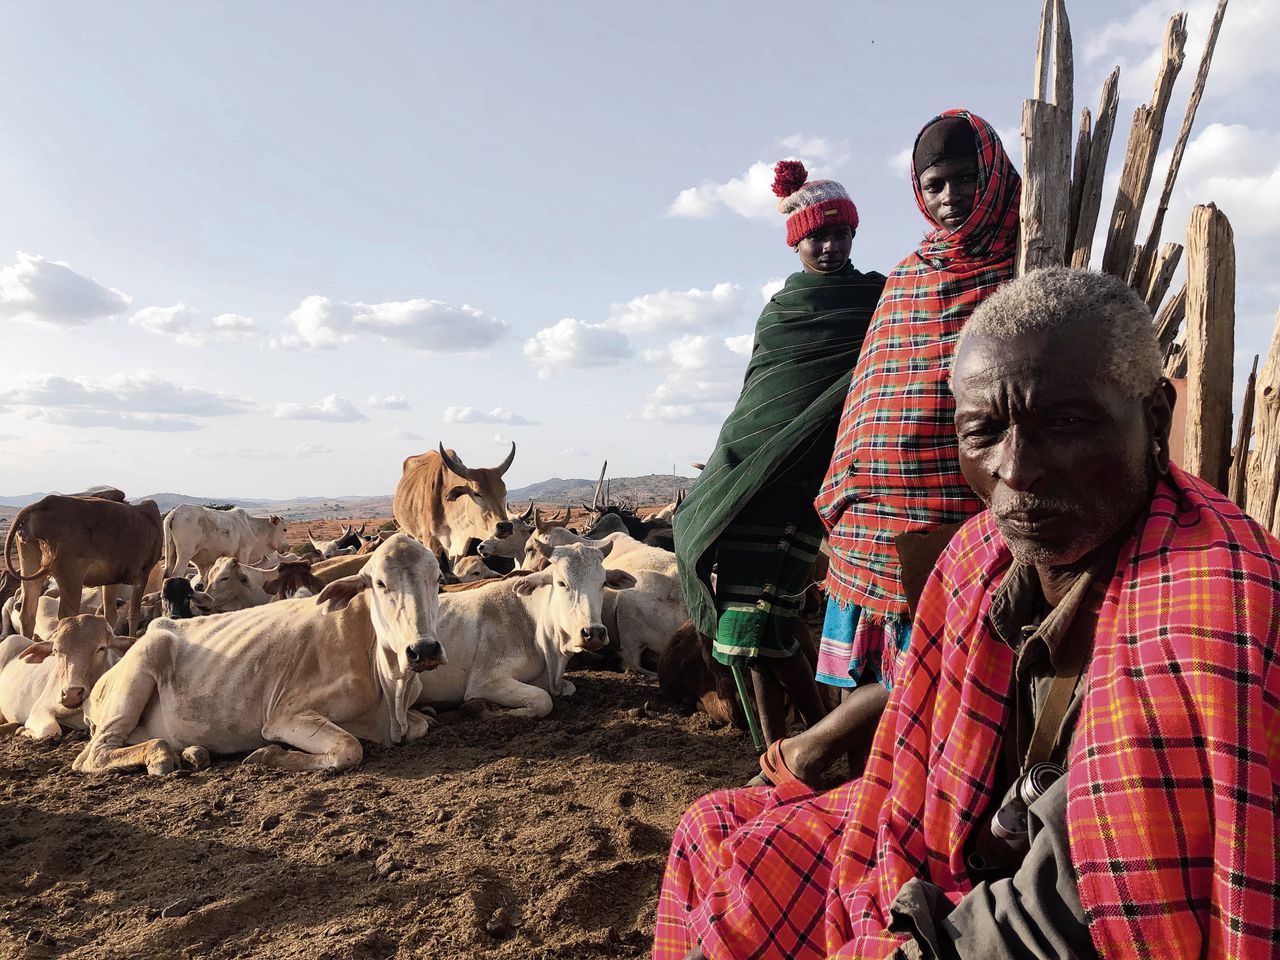  Haar droomland, het grootste private landgoed van Kenia, is beland in een geweldsspiraal 